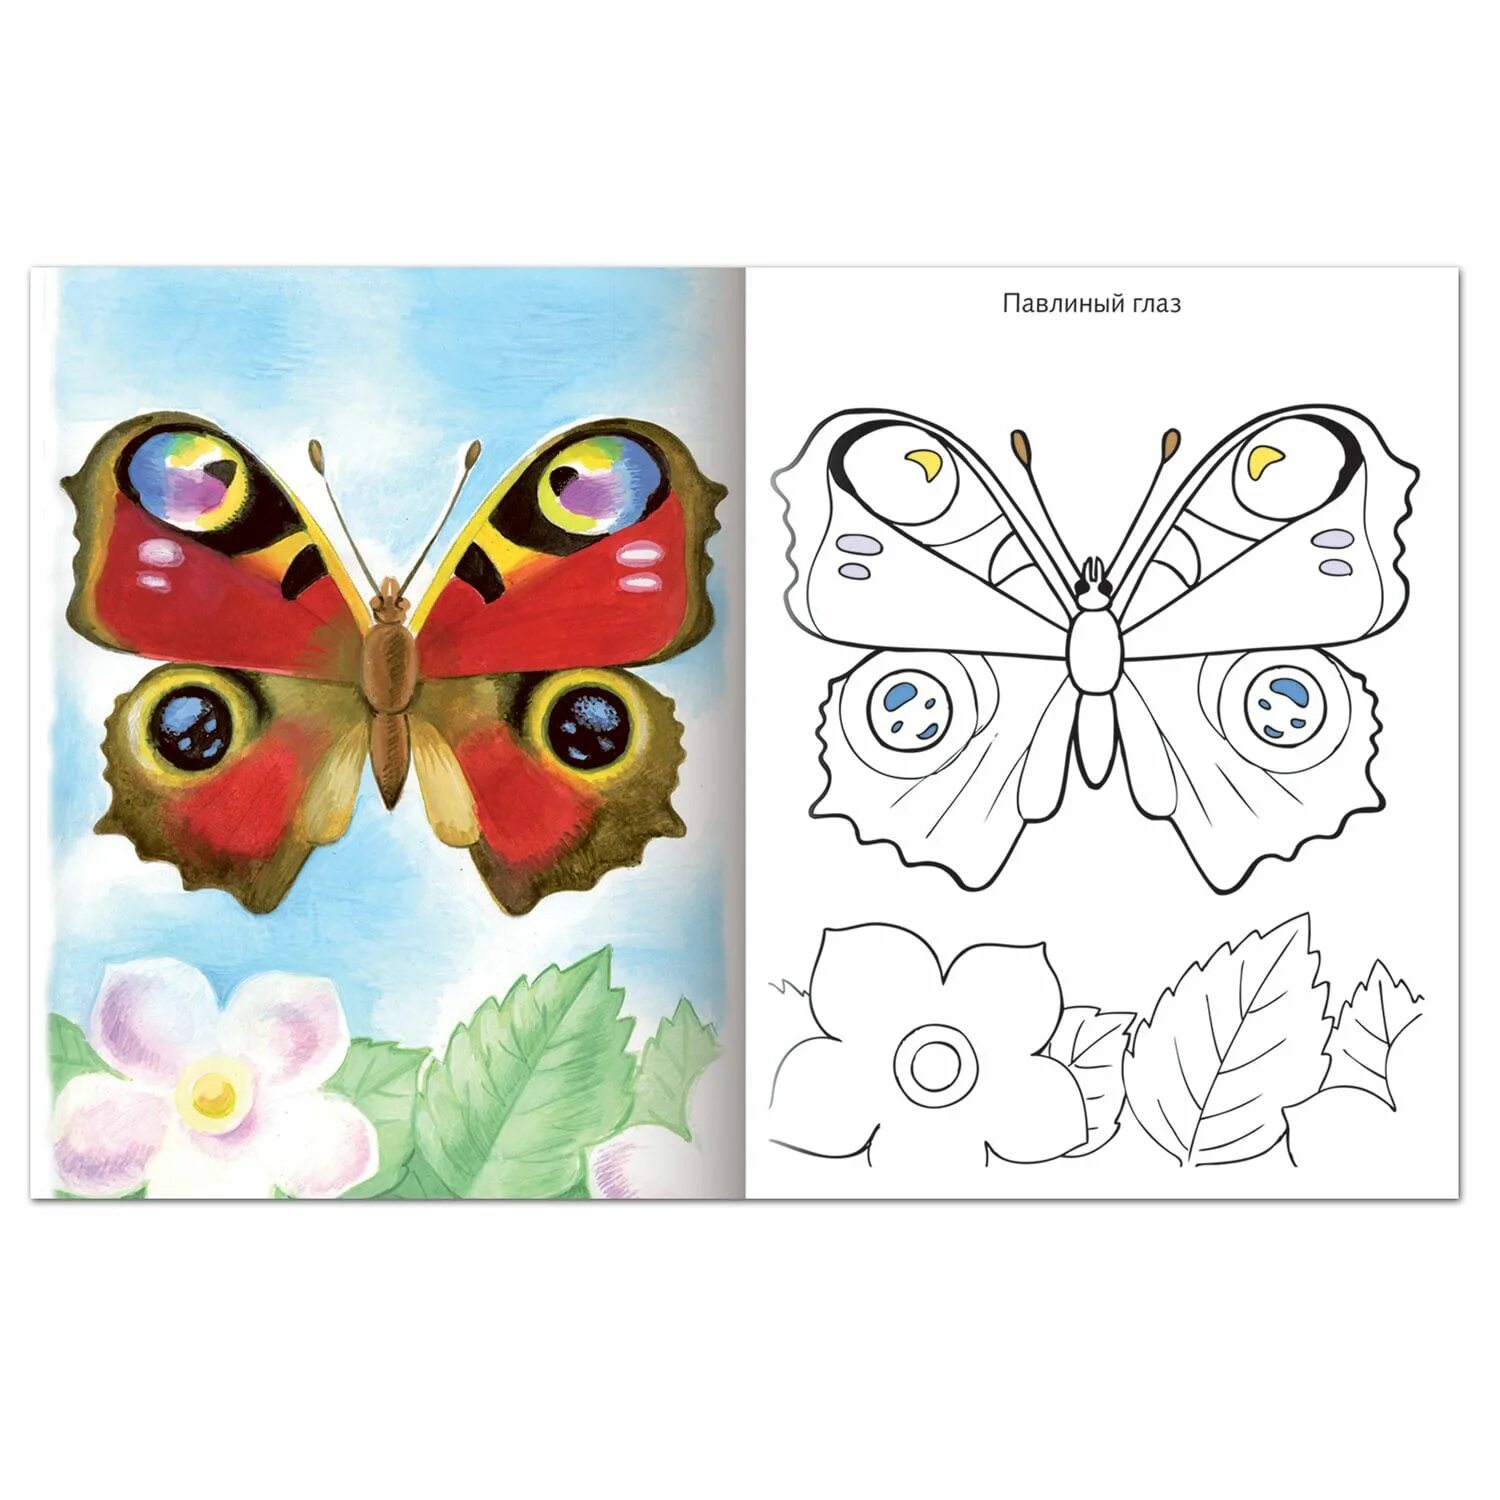 Величественно окрашенная раскраска бабочка-павлин